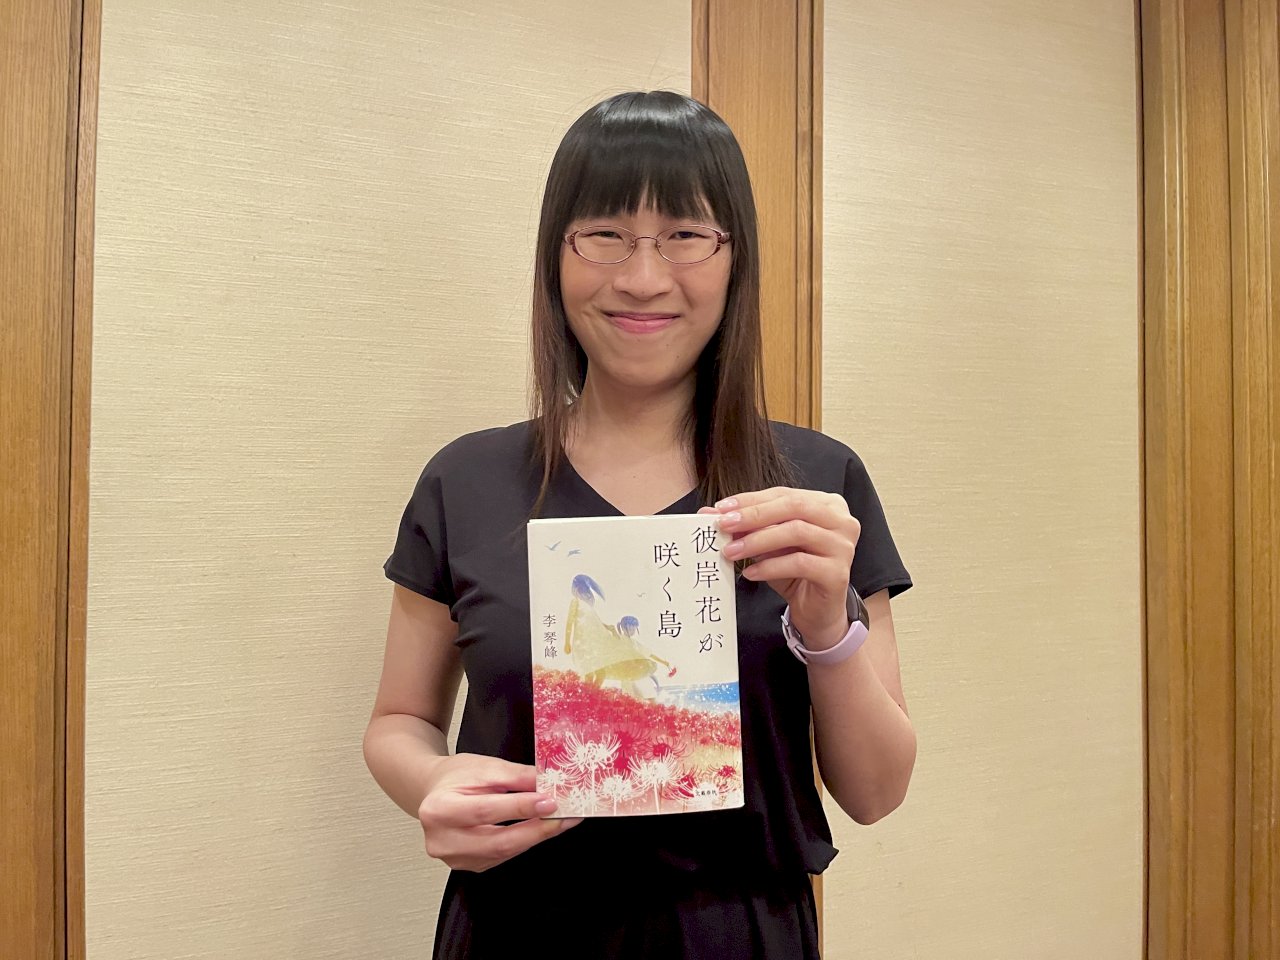 旅日作家李琴峰小說《彼岸花盛開之島》   獲第165屆日本芥川獎